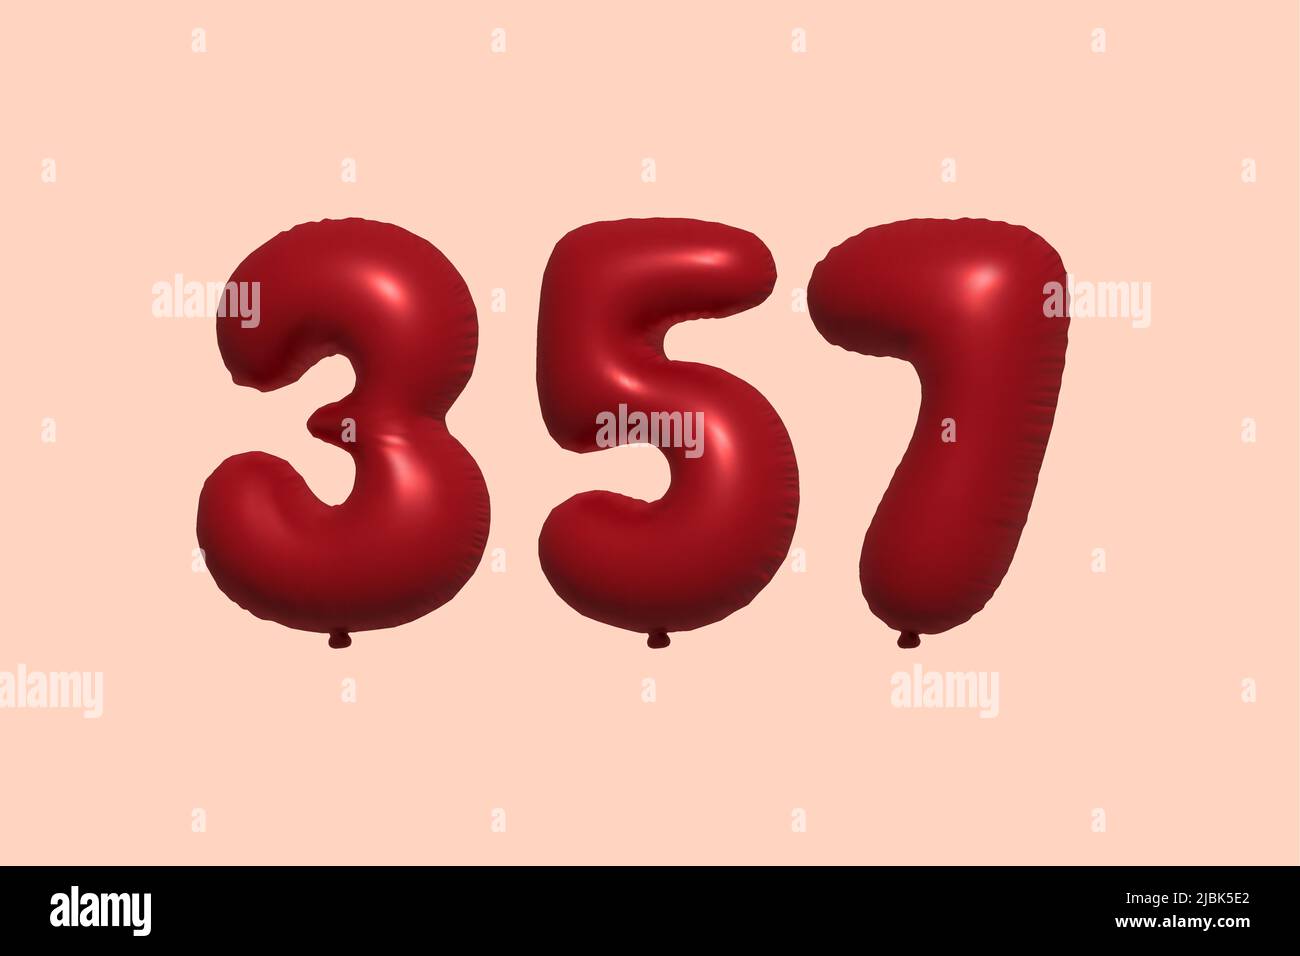 ballon à 357 3d chiffres en ballon d'air métallique réaliste rendu 3d. 3D ballons rouges à l'hélium à vendre décoration Fête anniversaire, célébration anniversaire, mariage vacances. Illustration vectorielle Illustration de Vecteur